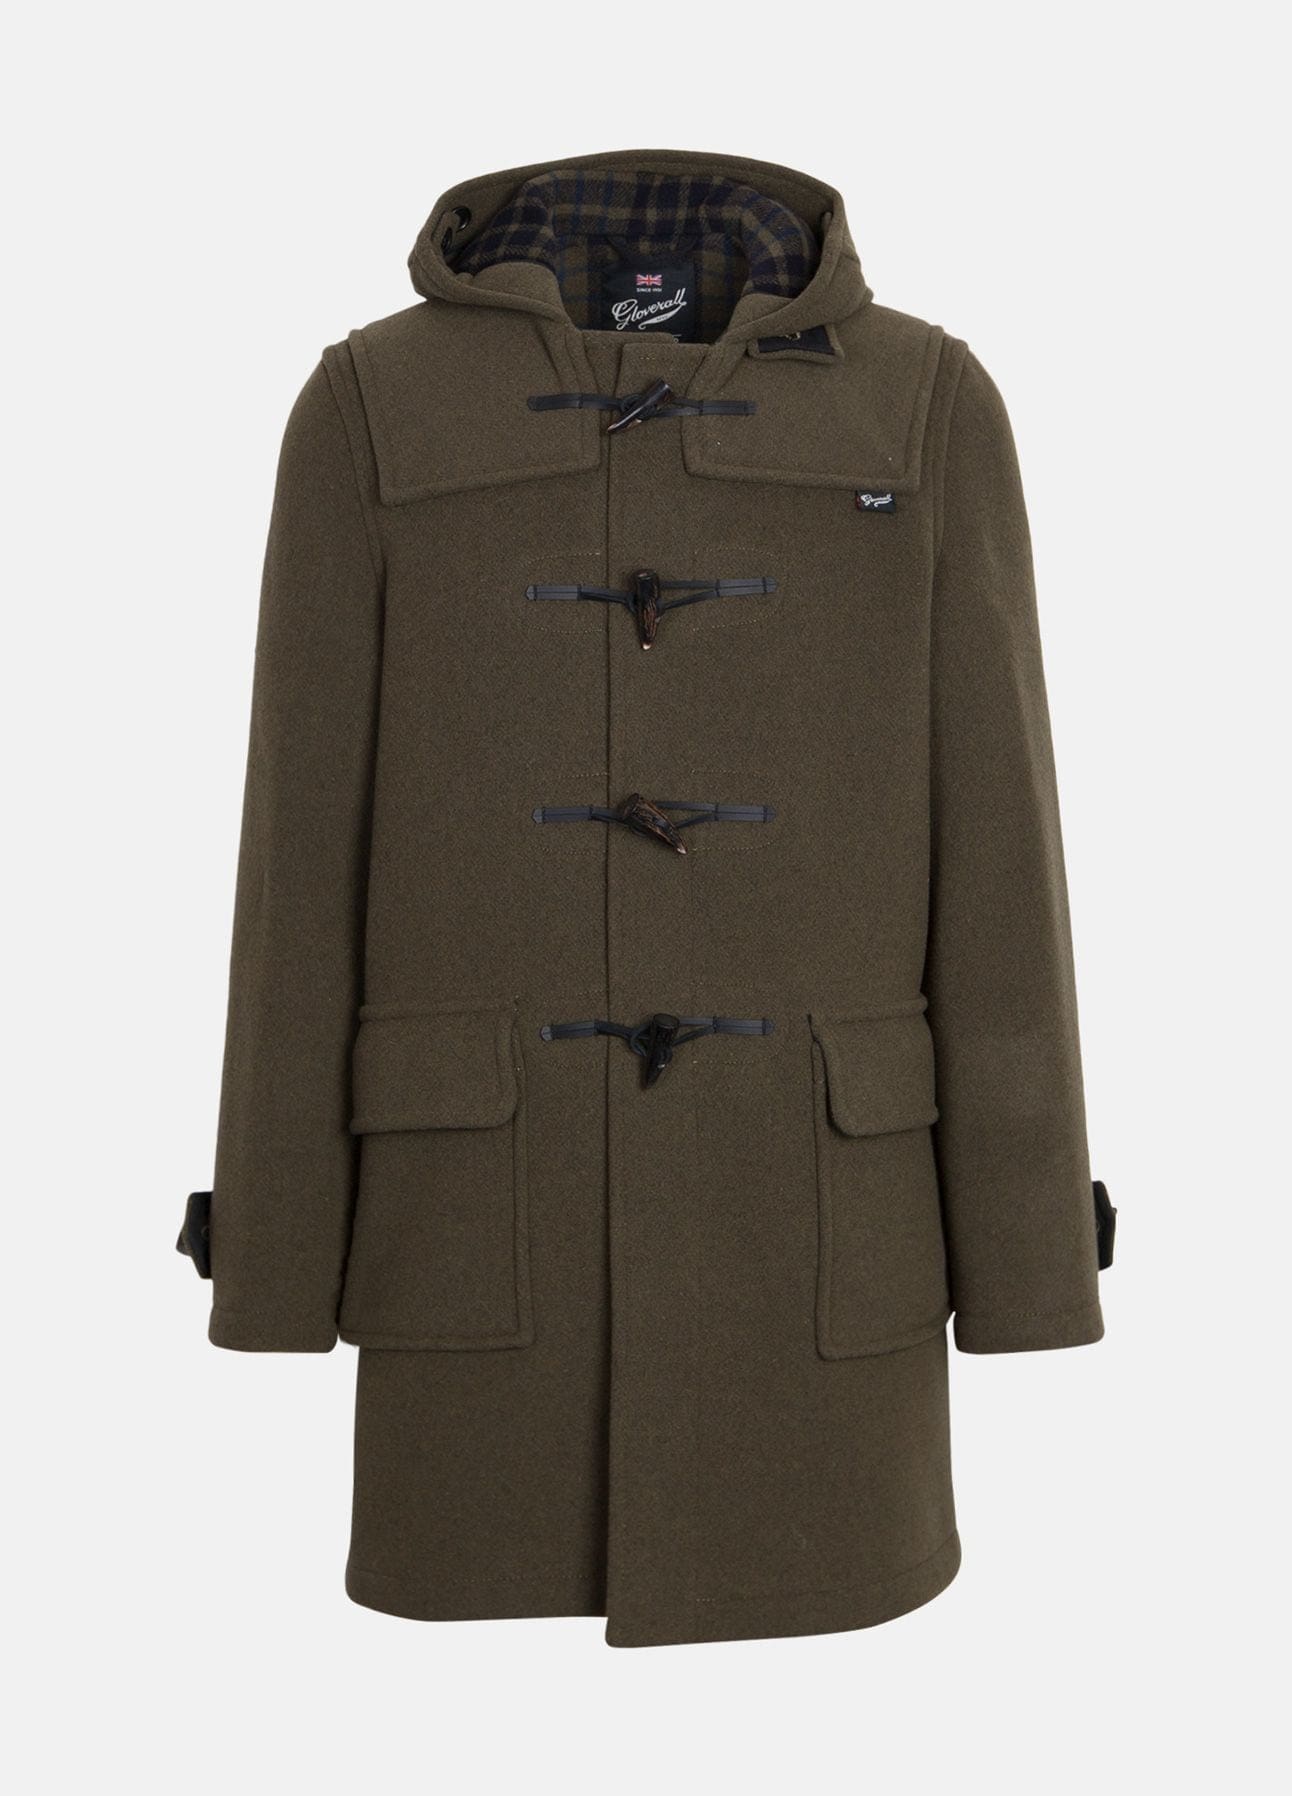 Grøn Morris duffle coat fra Gloverall